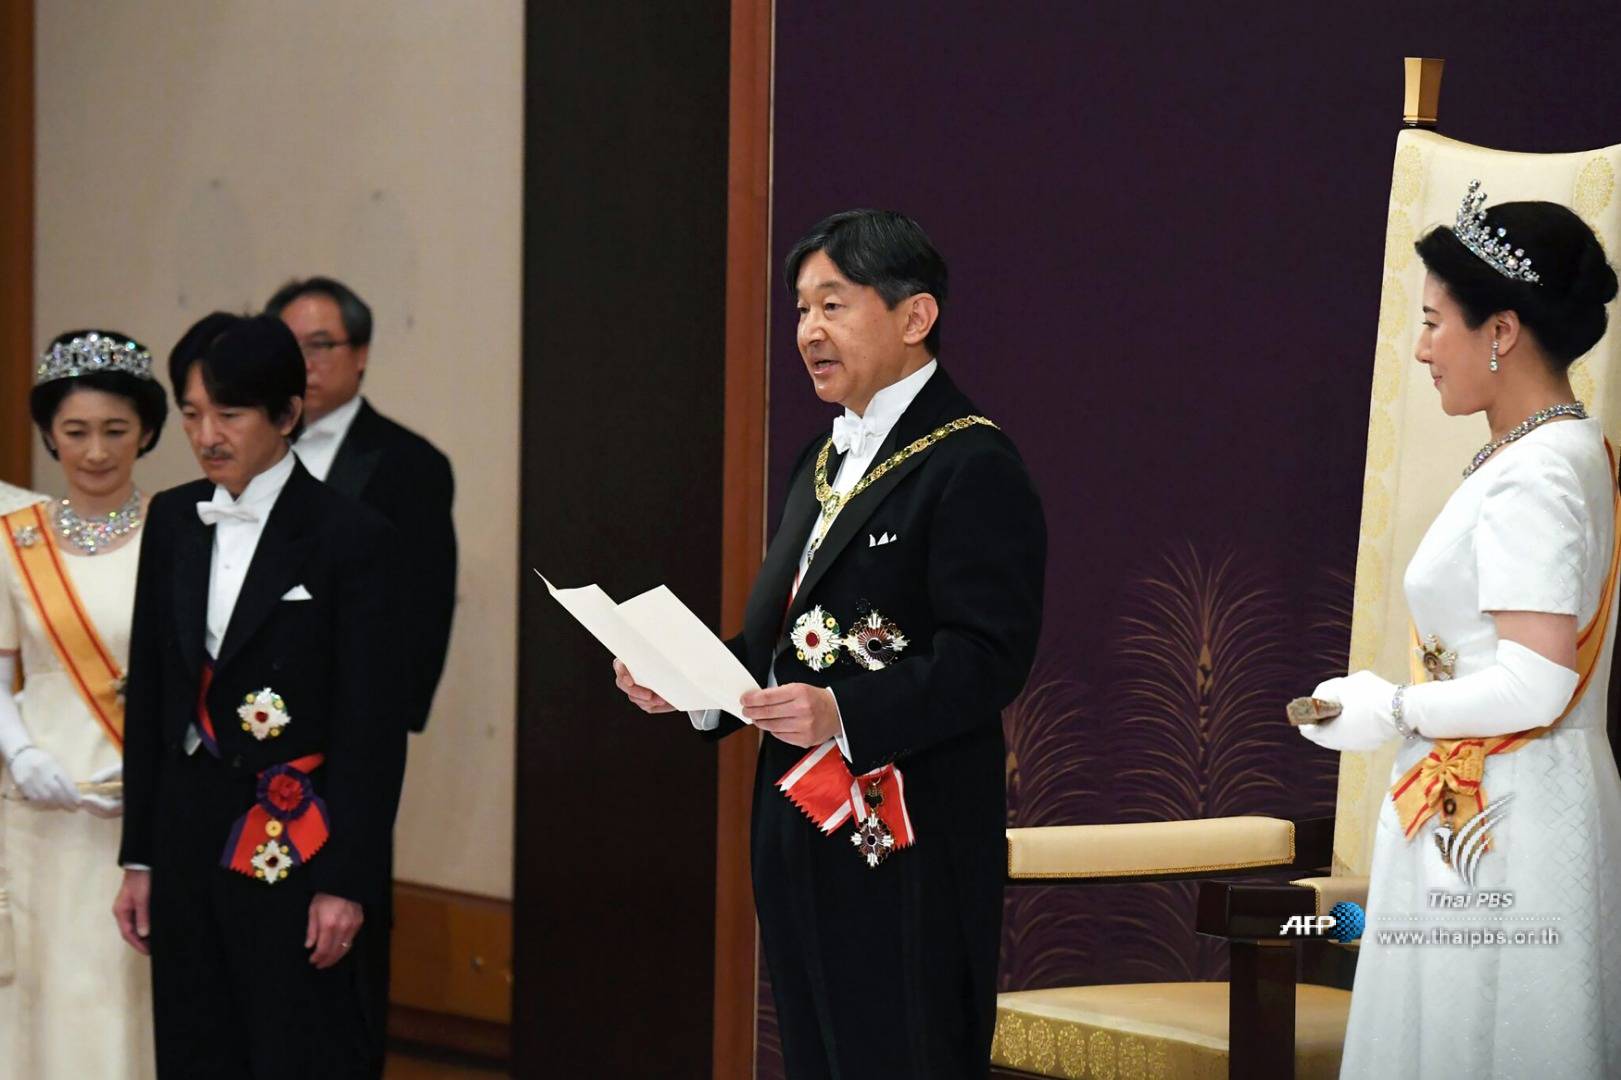 สมเด็จพระจักรพรรดินารูฮิโตะ มีพระปฐมบรมราชโองการ "จะคิดถึงประชาชนเป็นอันดับแรกและทำงานเพื่อประเทศญี่ปุ่น"